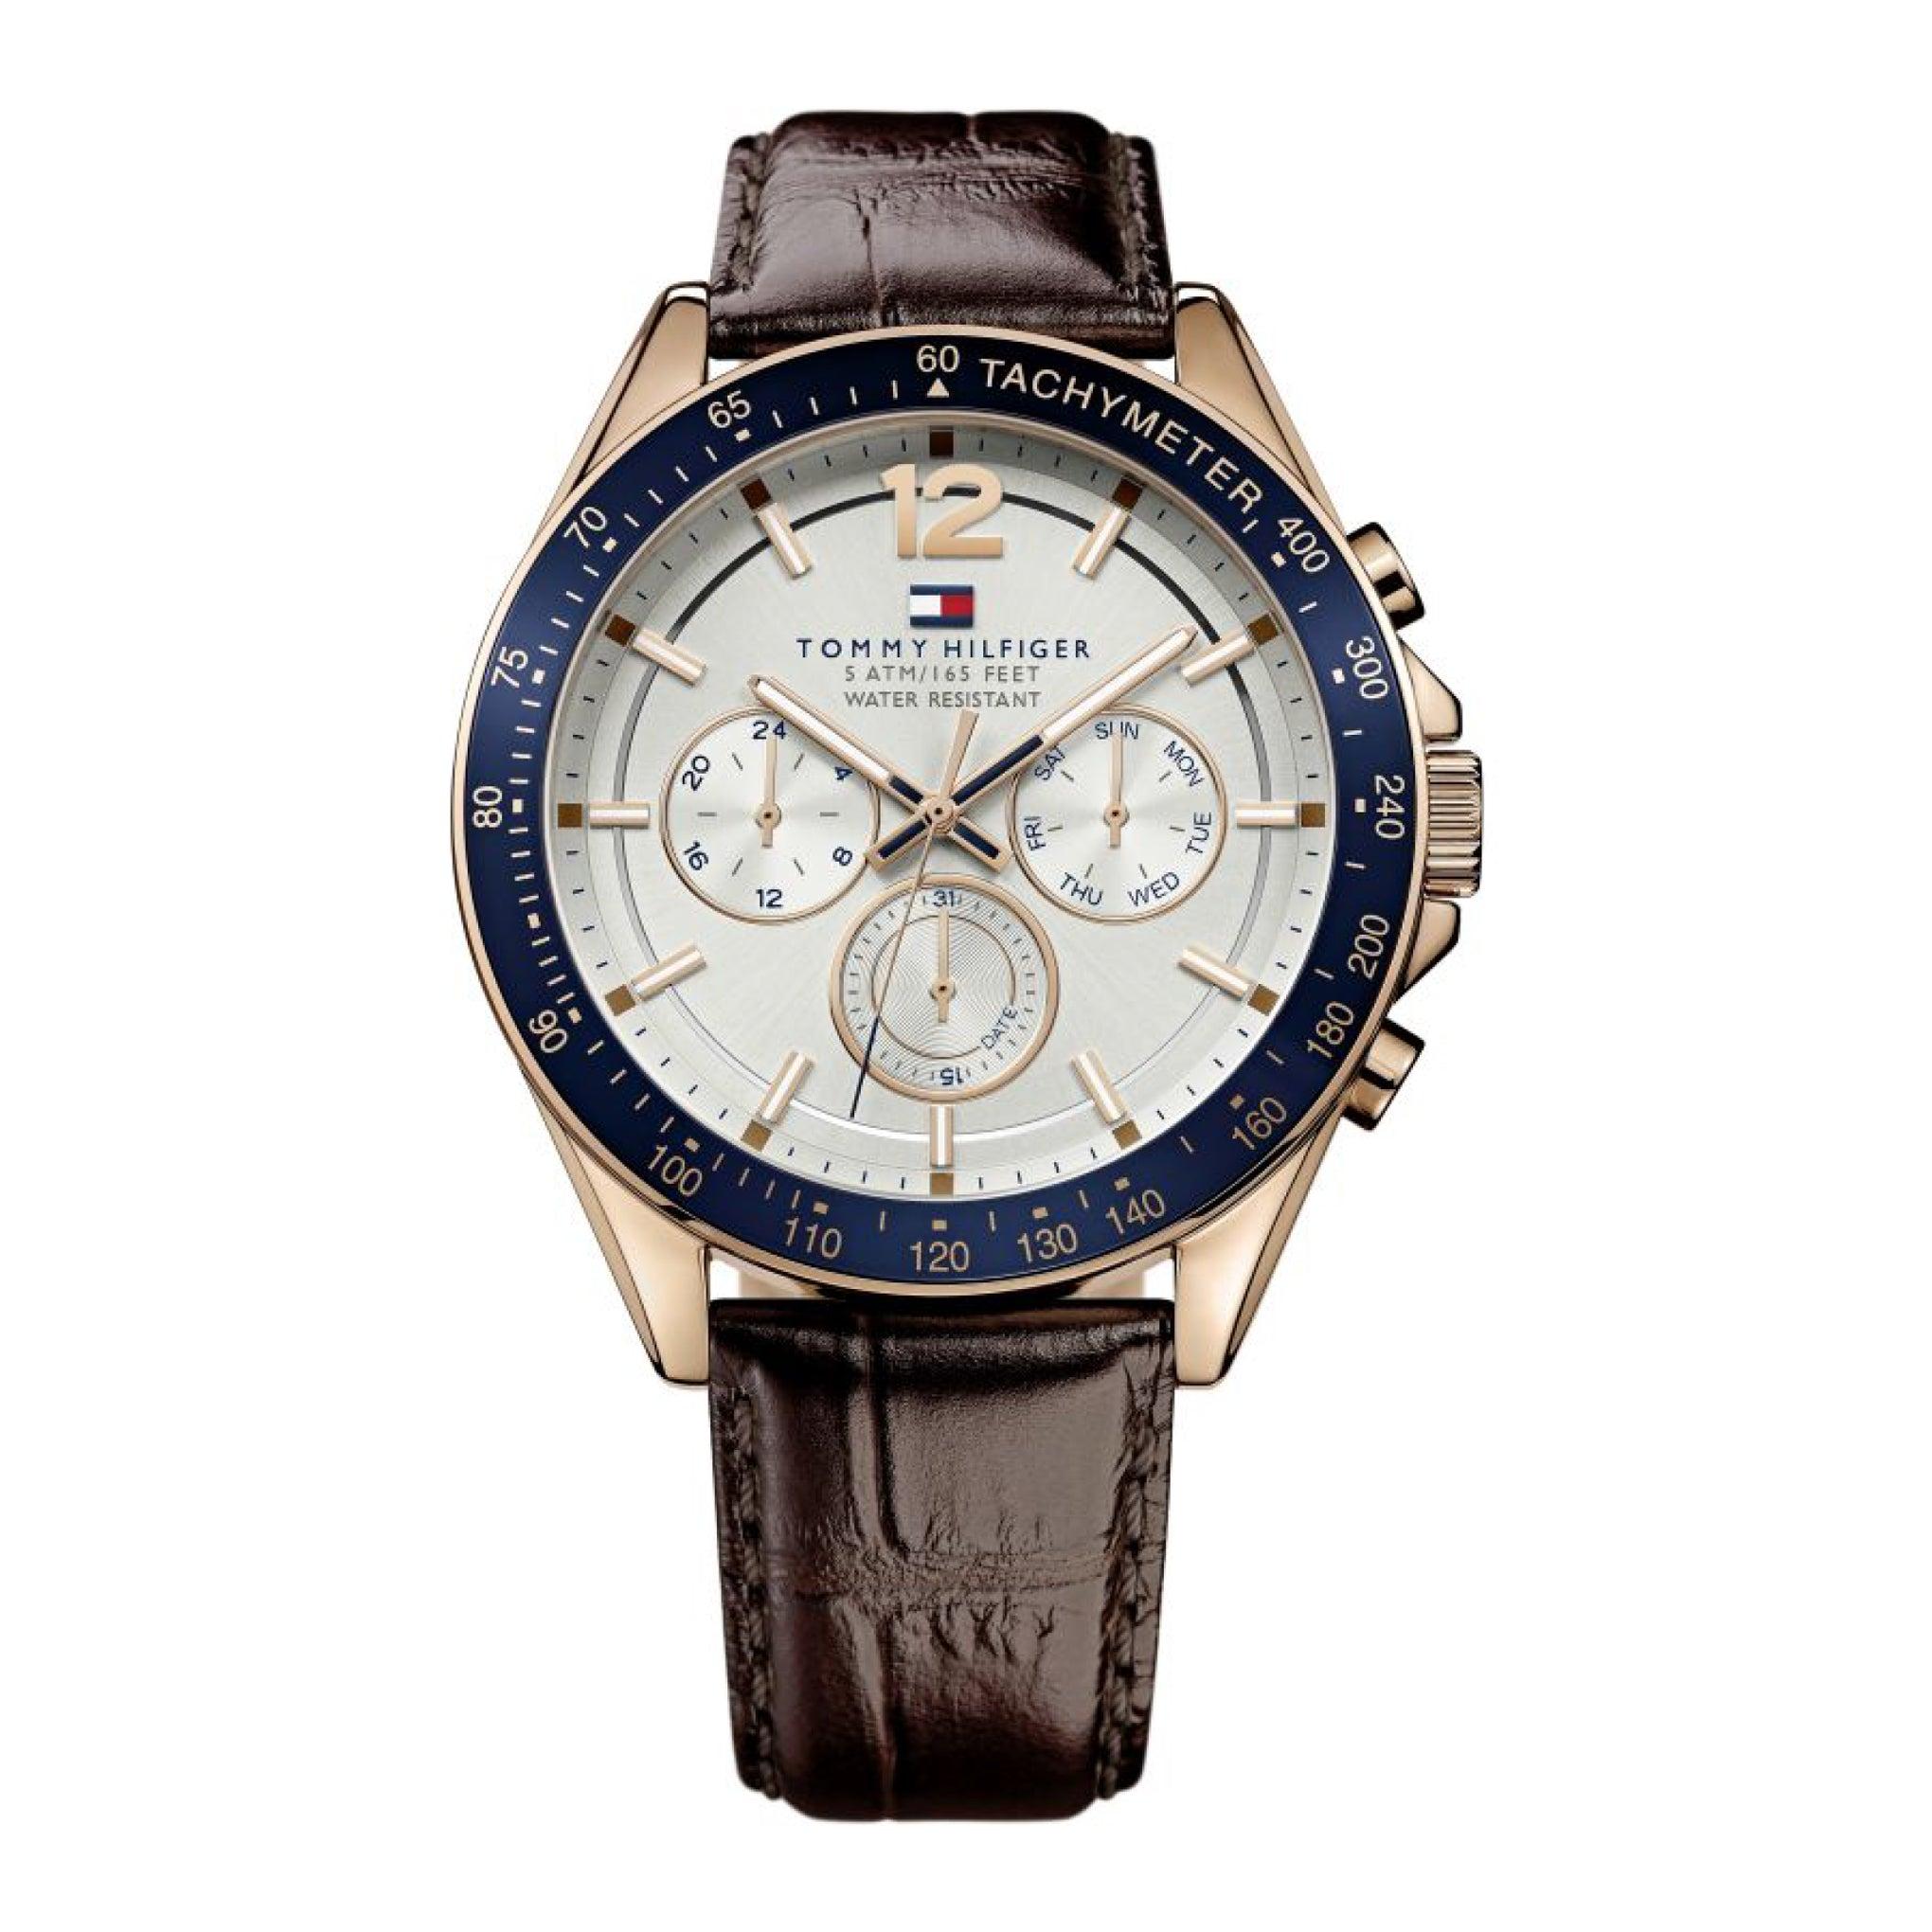 ساعة رجالية من تومي هيلفيغر Tommy Hilfiger Sophisticated Sport Watch With Brown Leather Band Watch 1791118